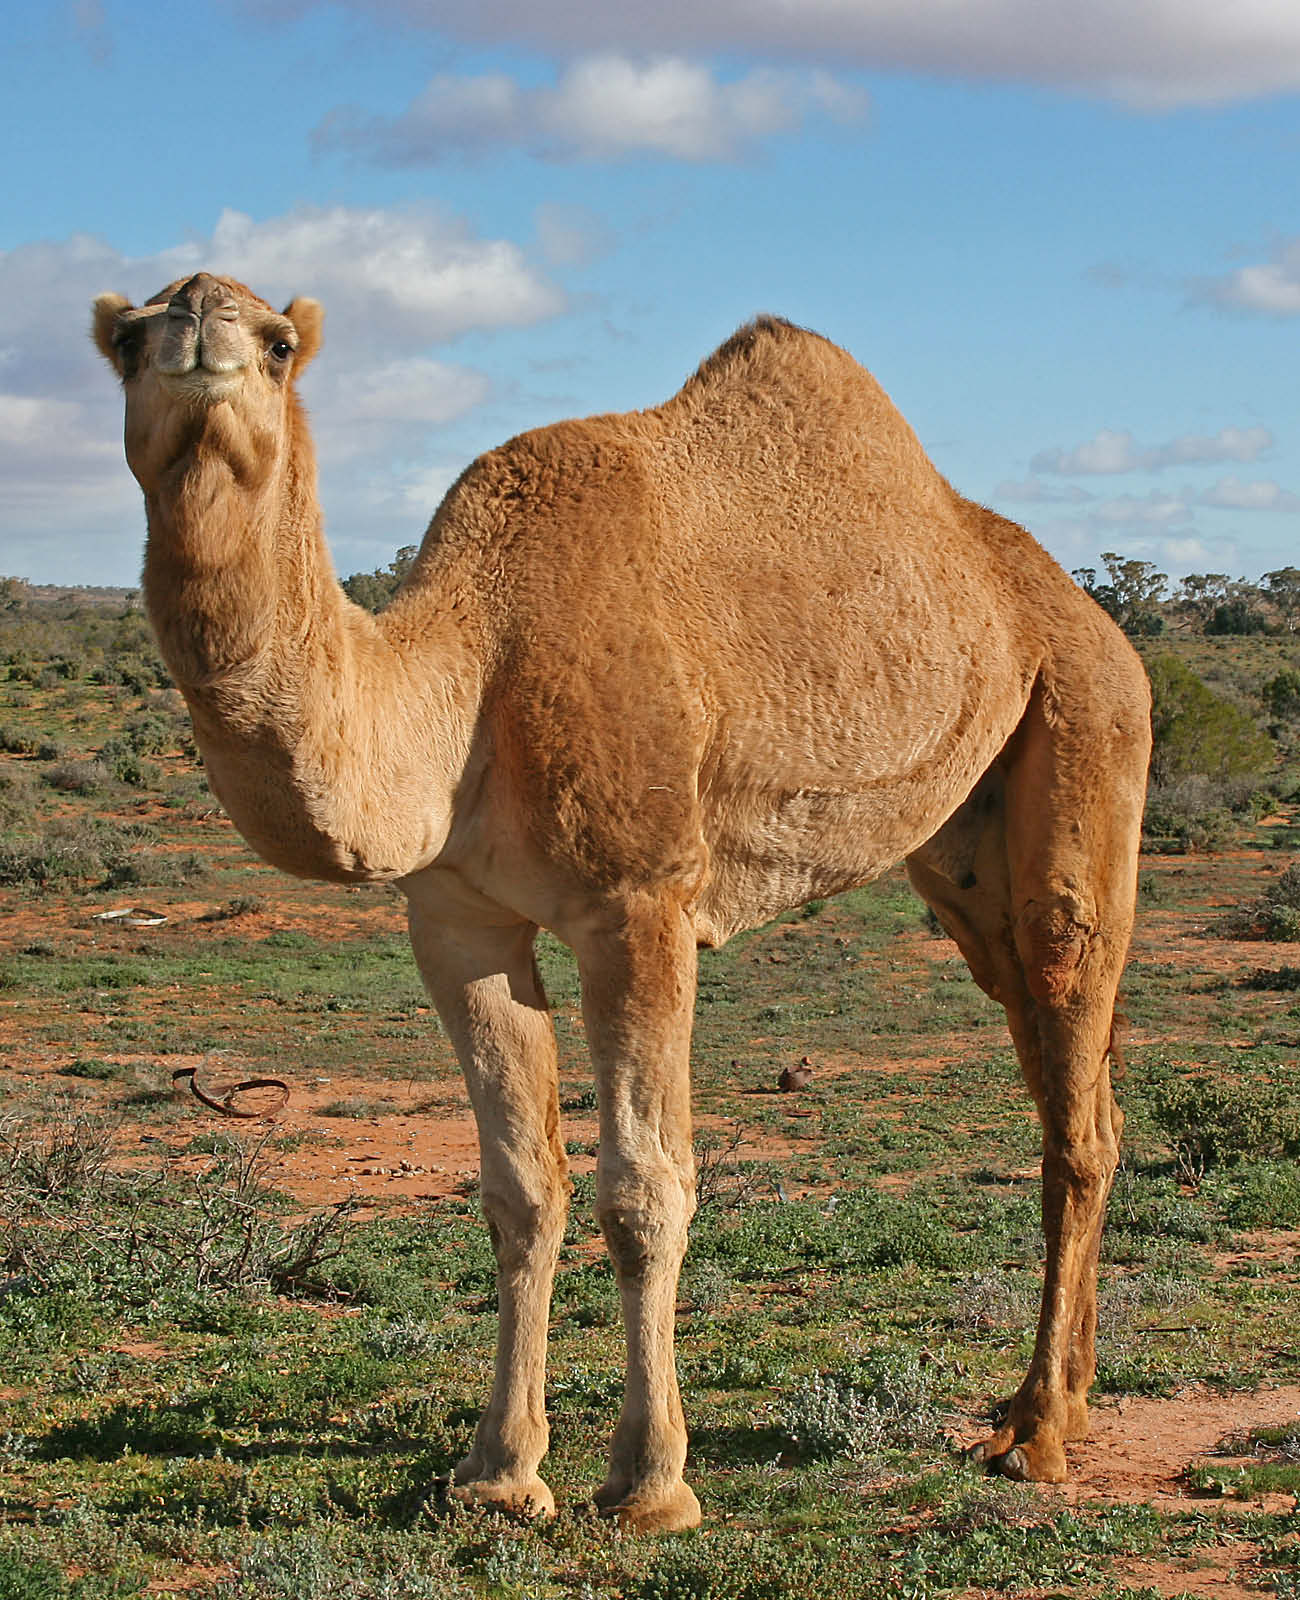 05_09_007-A camel.jpg